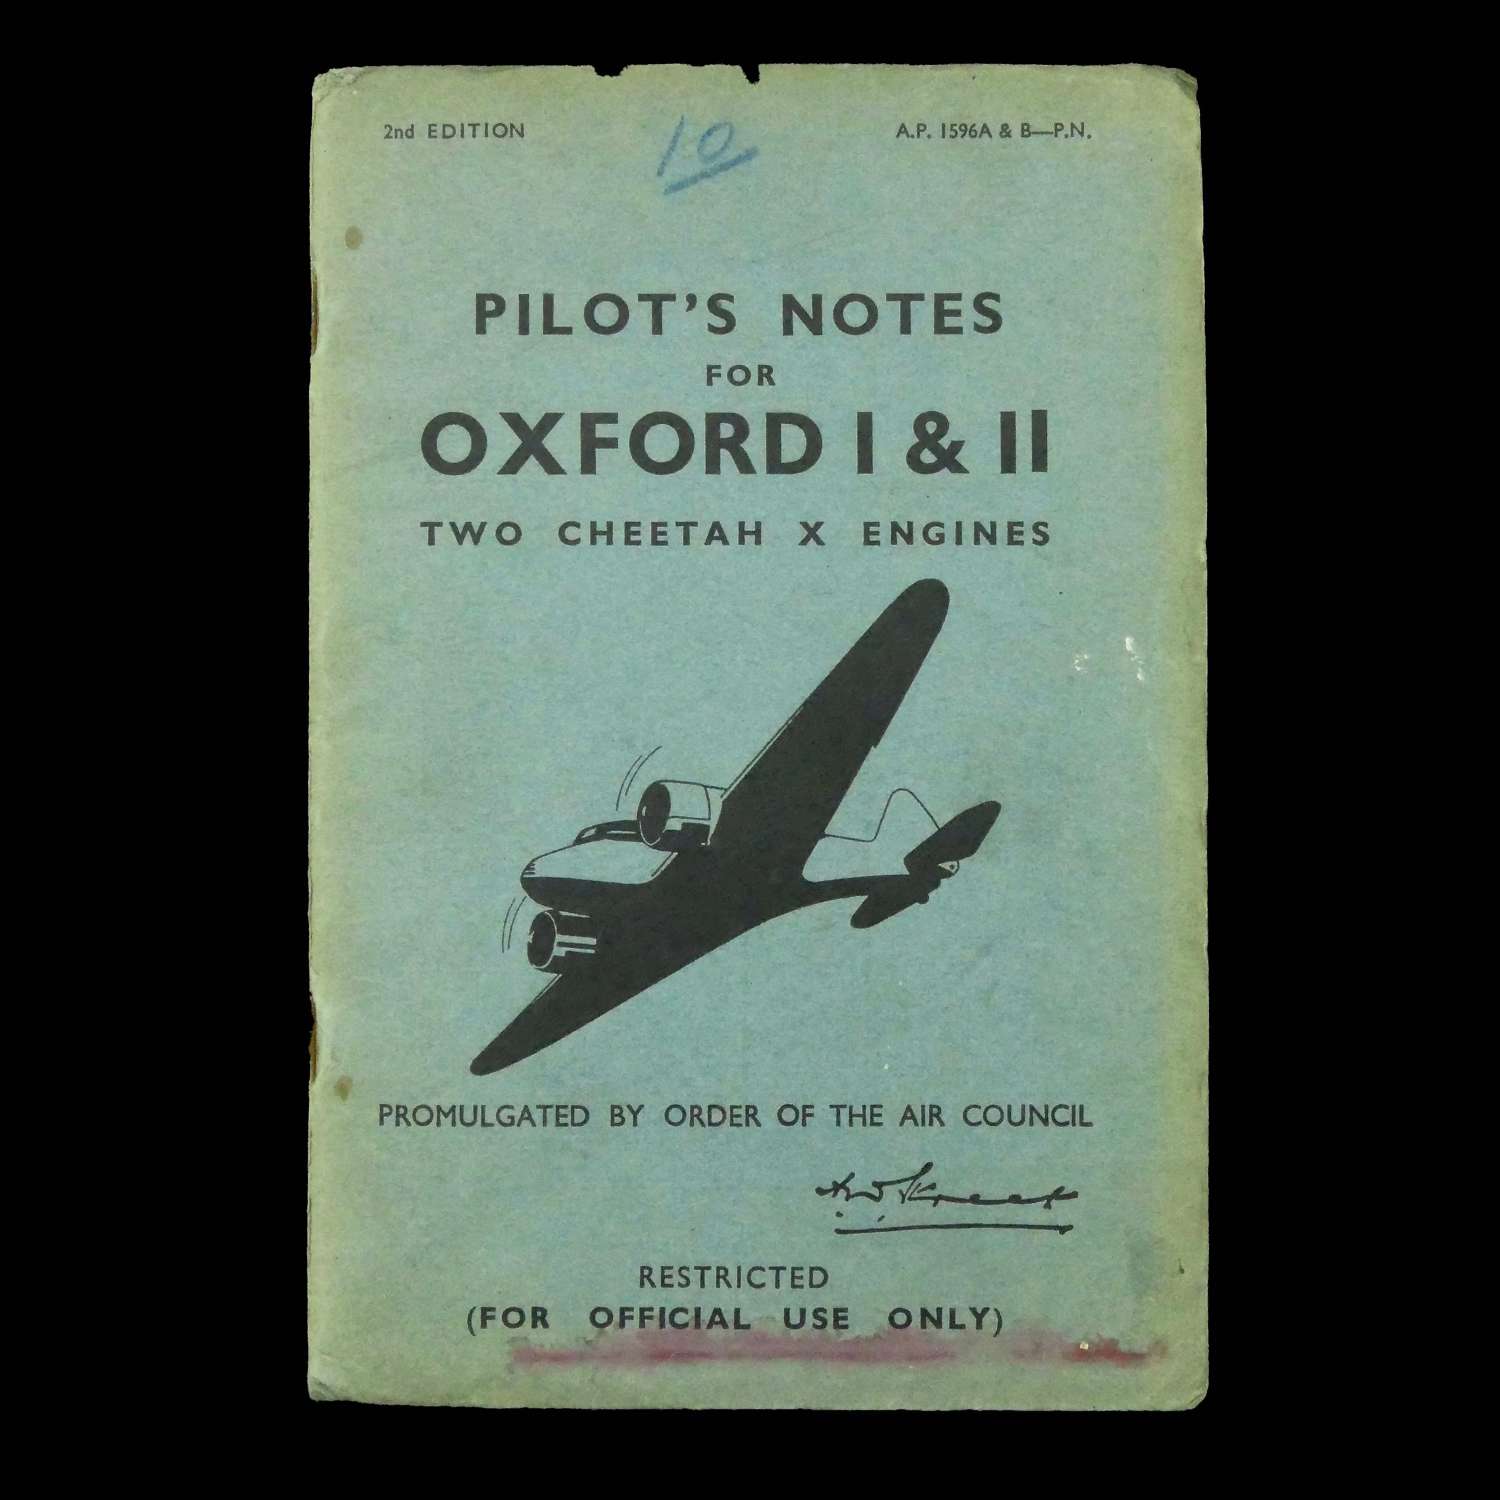 RAF pilot's notes - Oxford I & II